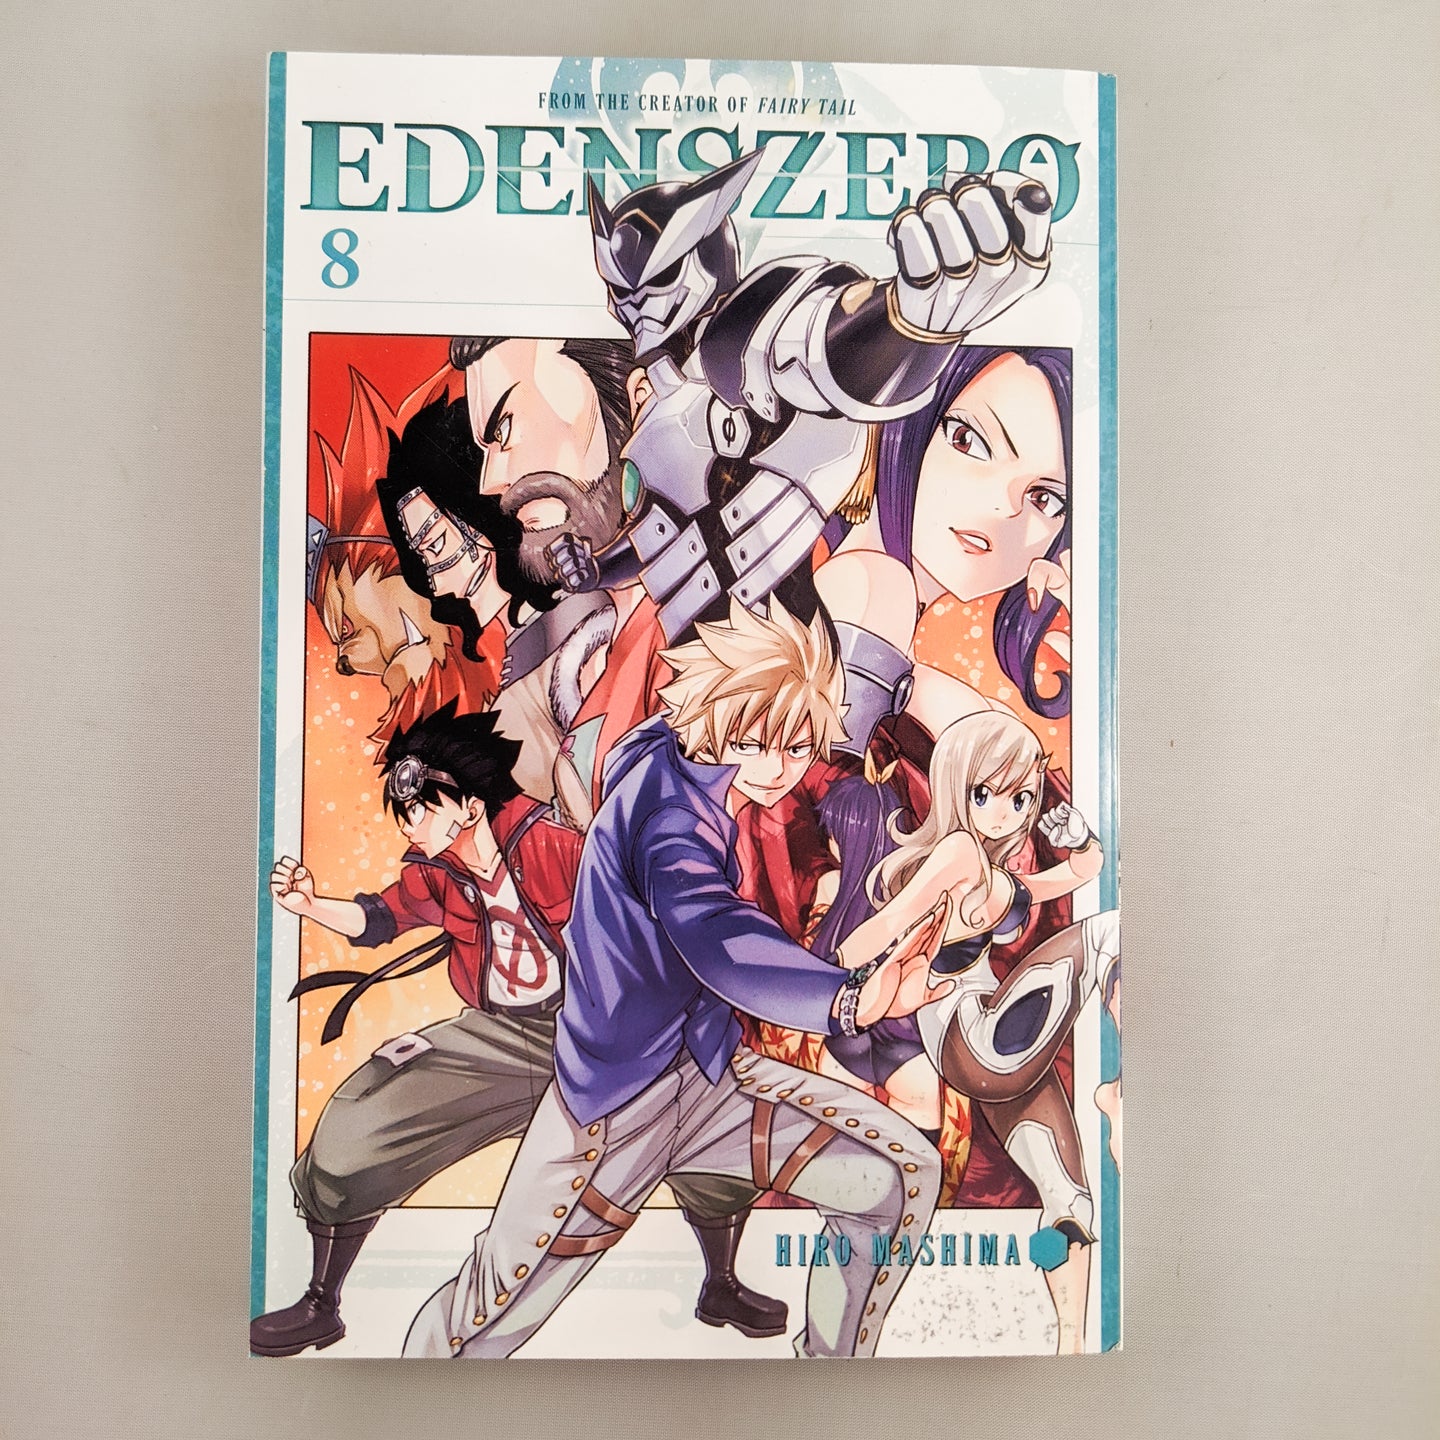 Edens Zero Manga by Hiro Mashima Volume 8.